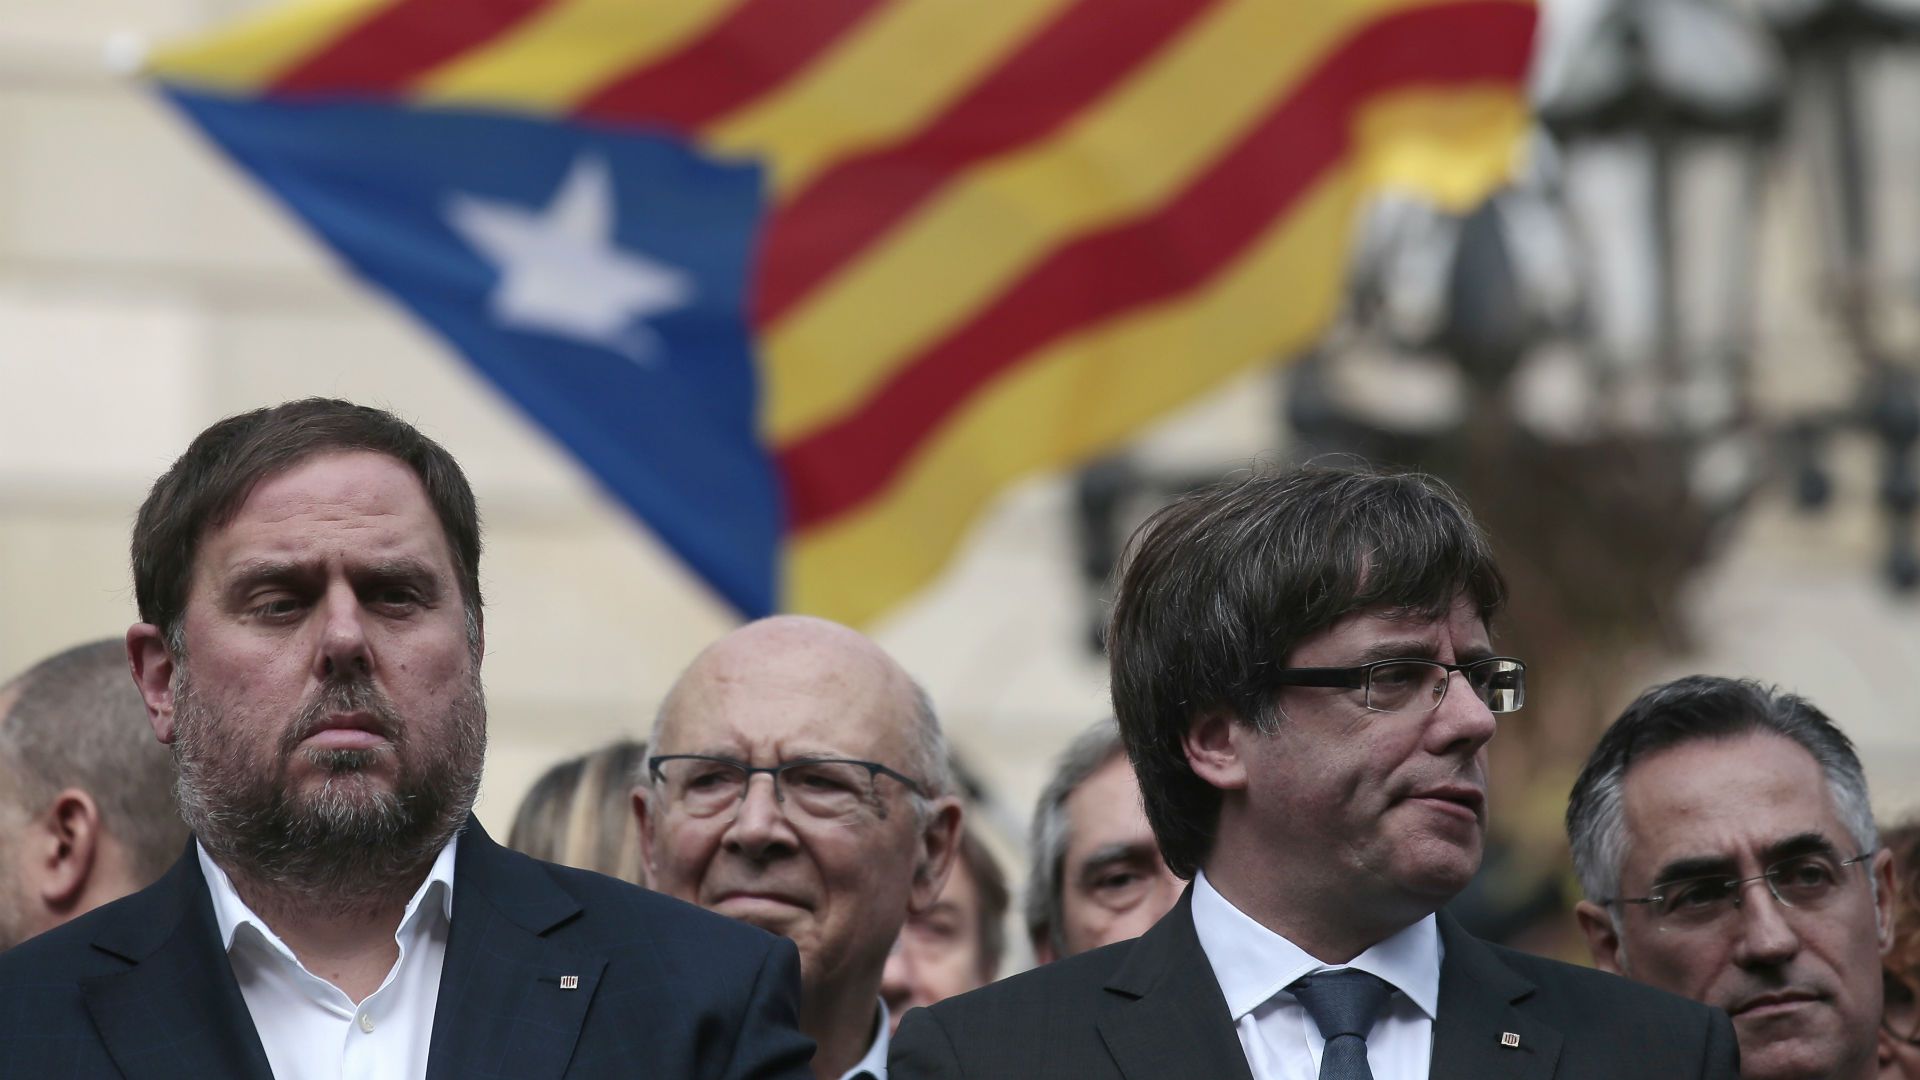 El ex presidente de la Generalitat, Carles Puigdemont, junto al ex vicepresidente catalán, Oriol Junqueras (del ERC), durante un acto independentista frente al palacio de la Generalitat en Barcelona (AP Photo/Manu Fernandez)